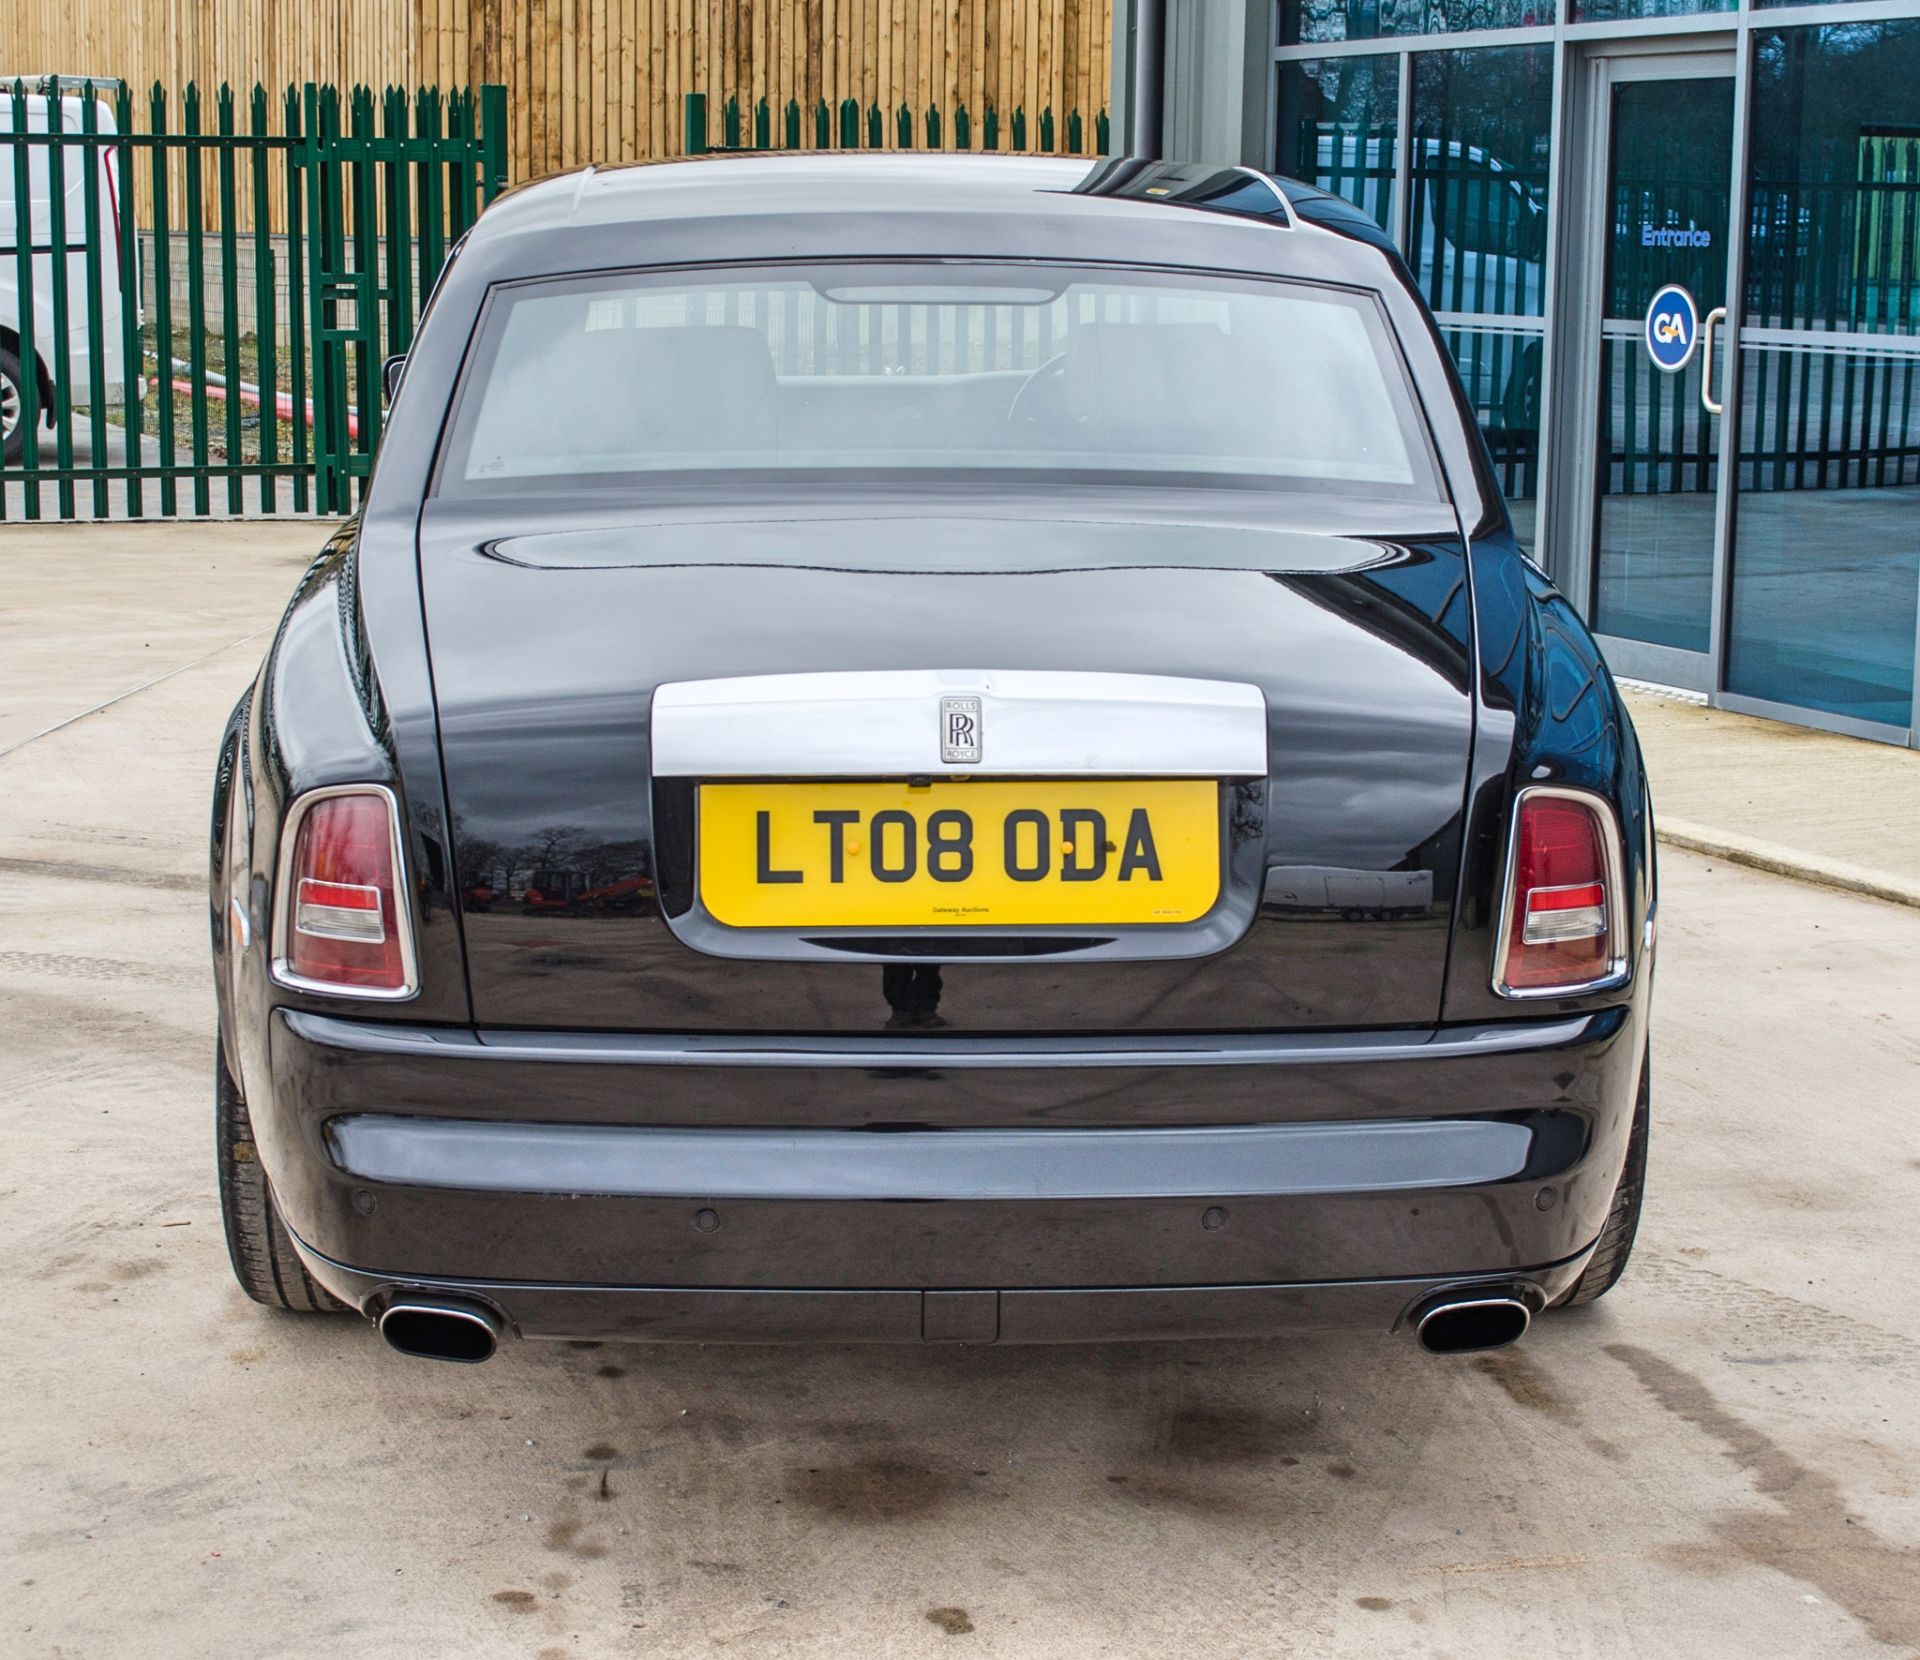 2008 Rolls Royce Phantom 6.75 litre V12 4 door saloon - Image 12 of 60